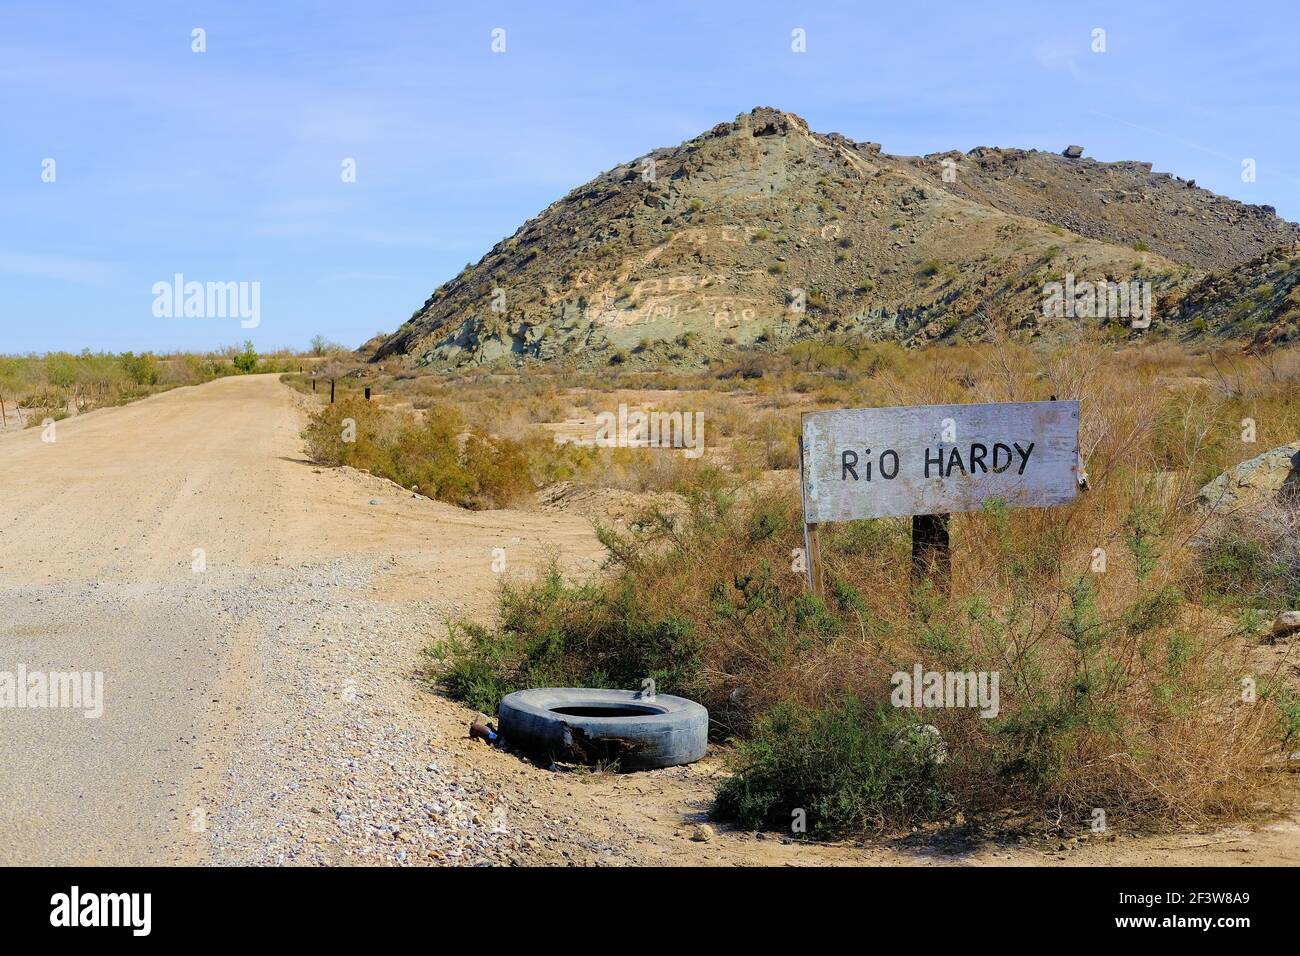 Handgemachtes Schild auf einer unbefestigten Straße Richtung Hardy River, in der Nähe von Mexicali, Baja California, Mexiko; Rio Hardy ist der einzige schiffbare Fluss auf der Halbinsel. Stockfoto